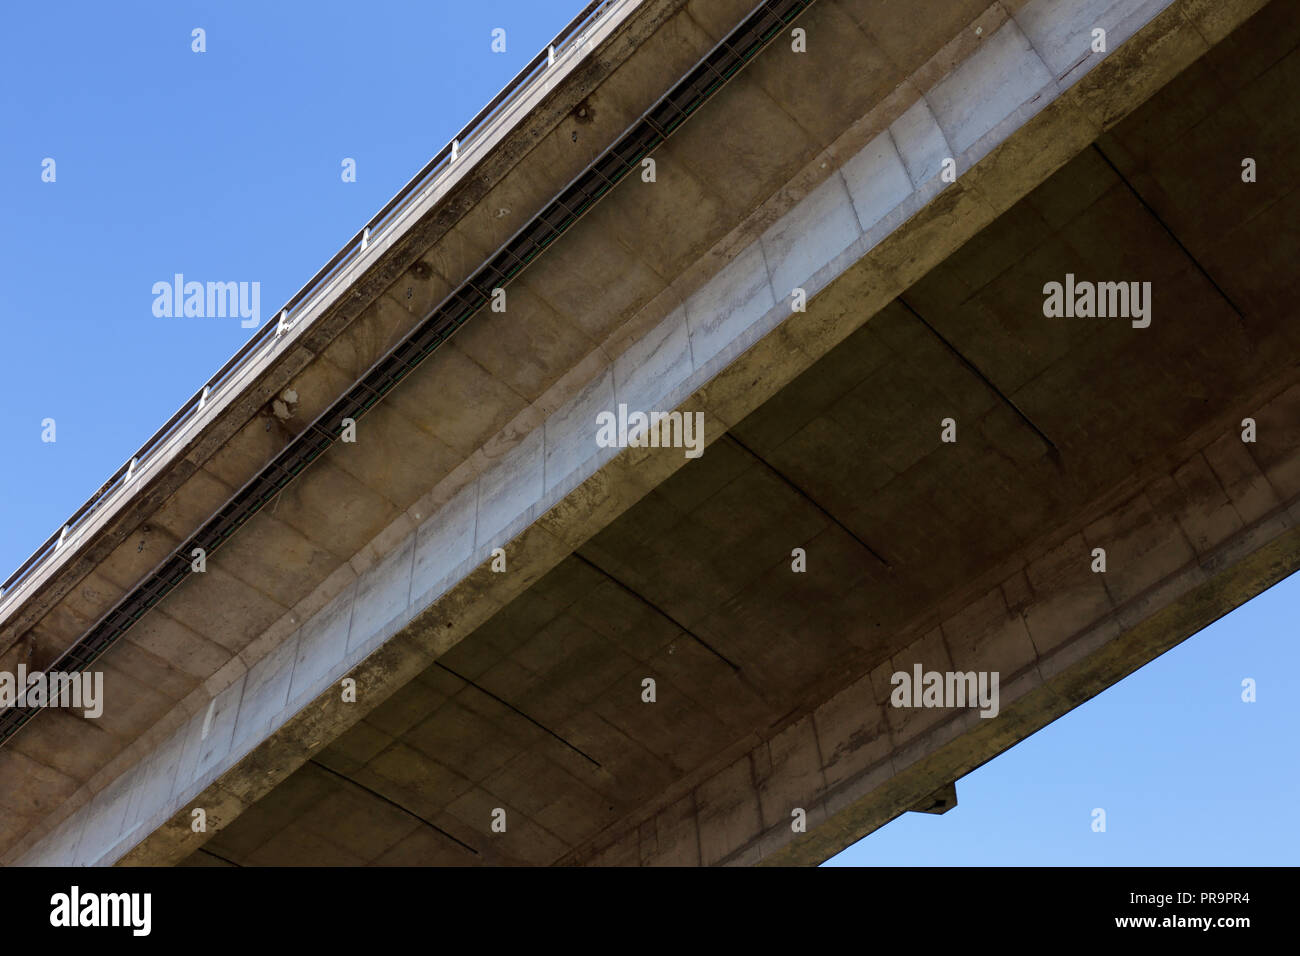 Niedrige Engel Anzeigen in der Nähe der Unterseite des Oland Brücke, eine Betonkonstruktion. Stockfoto